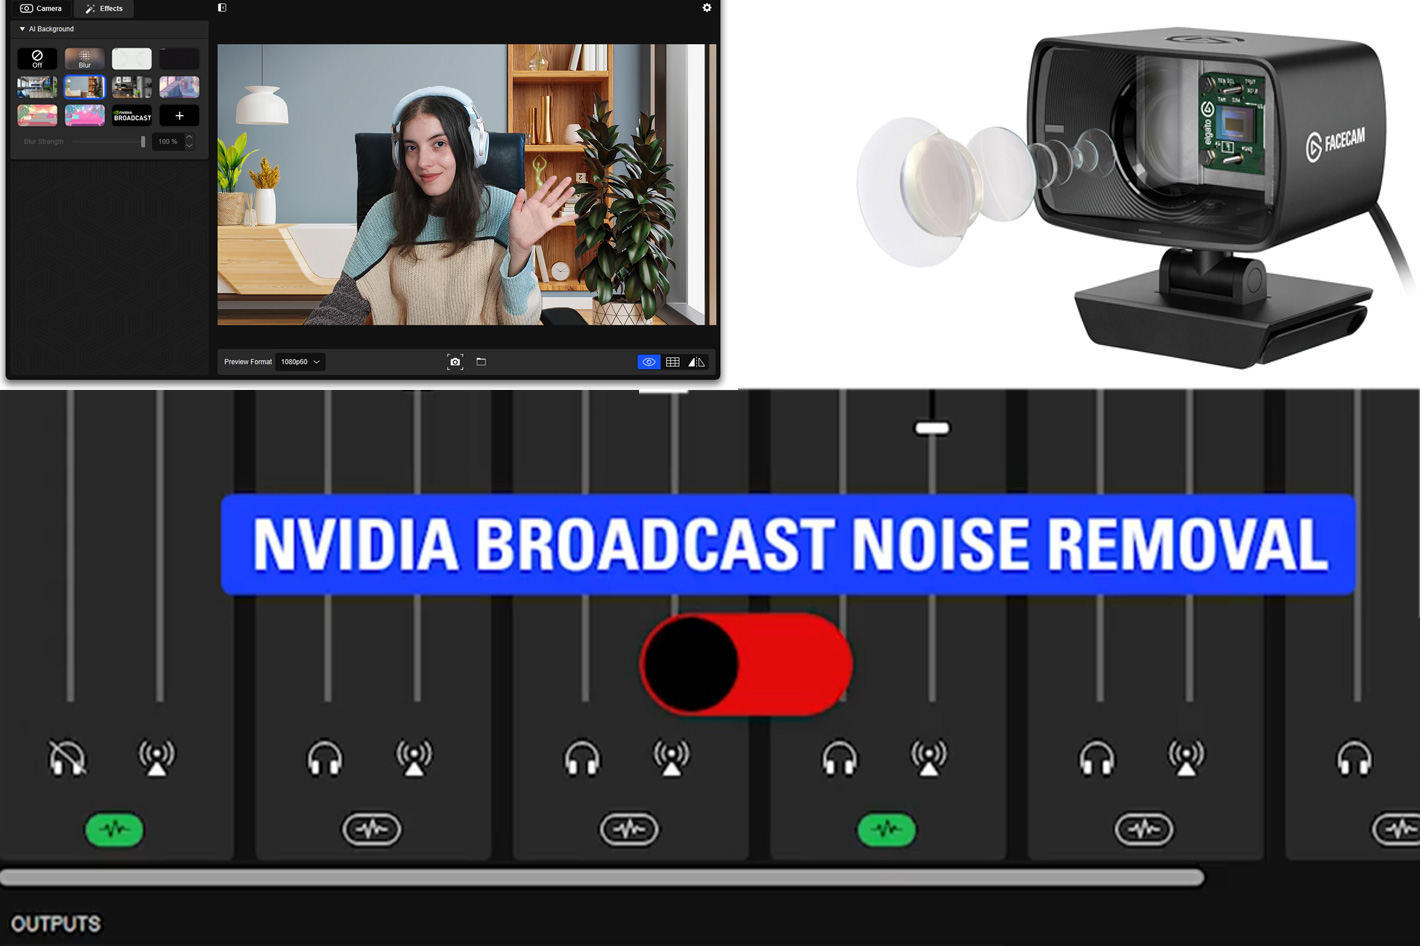 NVIDIA Broadcast đã được tích hợp vào phần mềm CORSAIR và Elgato để giúp bạn tạo nên những bài phát sóng hoàn hảo hơn. Chúng tôi sẽ giúp bạn hiểu rõ hơn về tính năng này và cách sử dụng nó để tạo ra những bài phát sóng tuyệt vời.